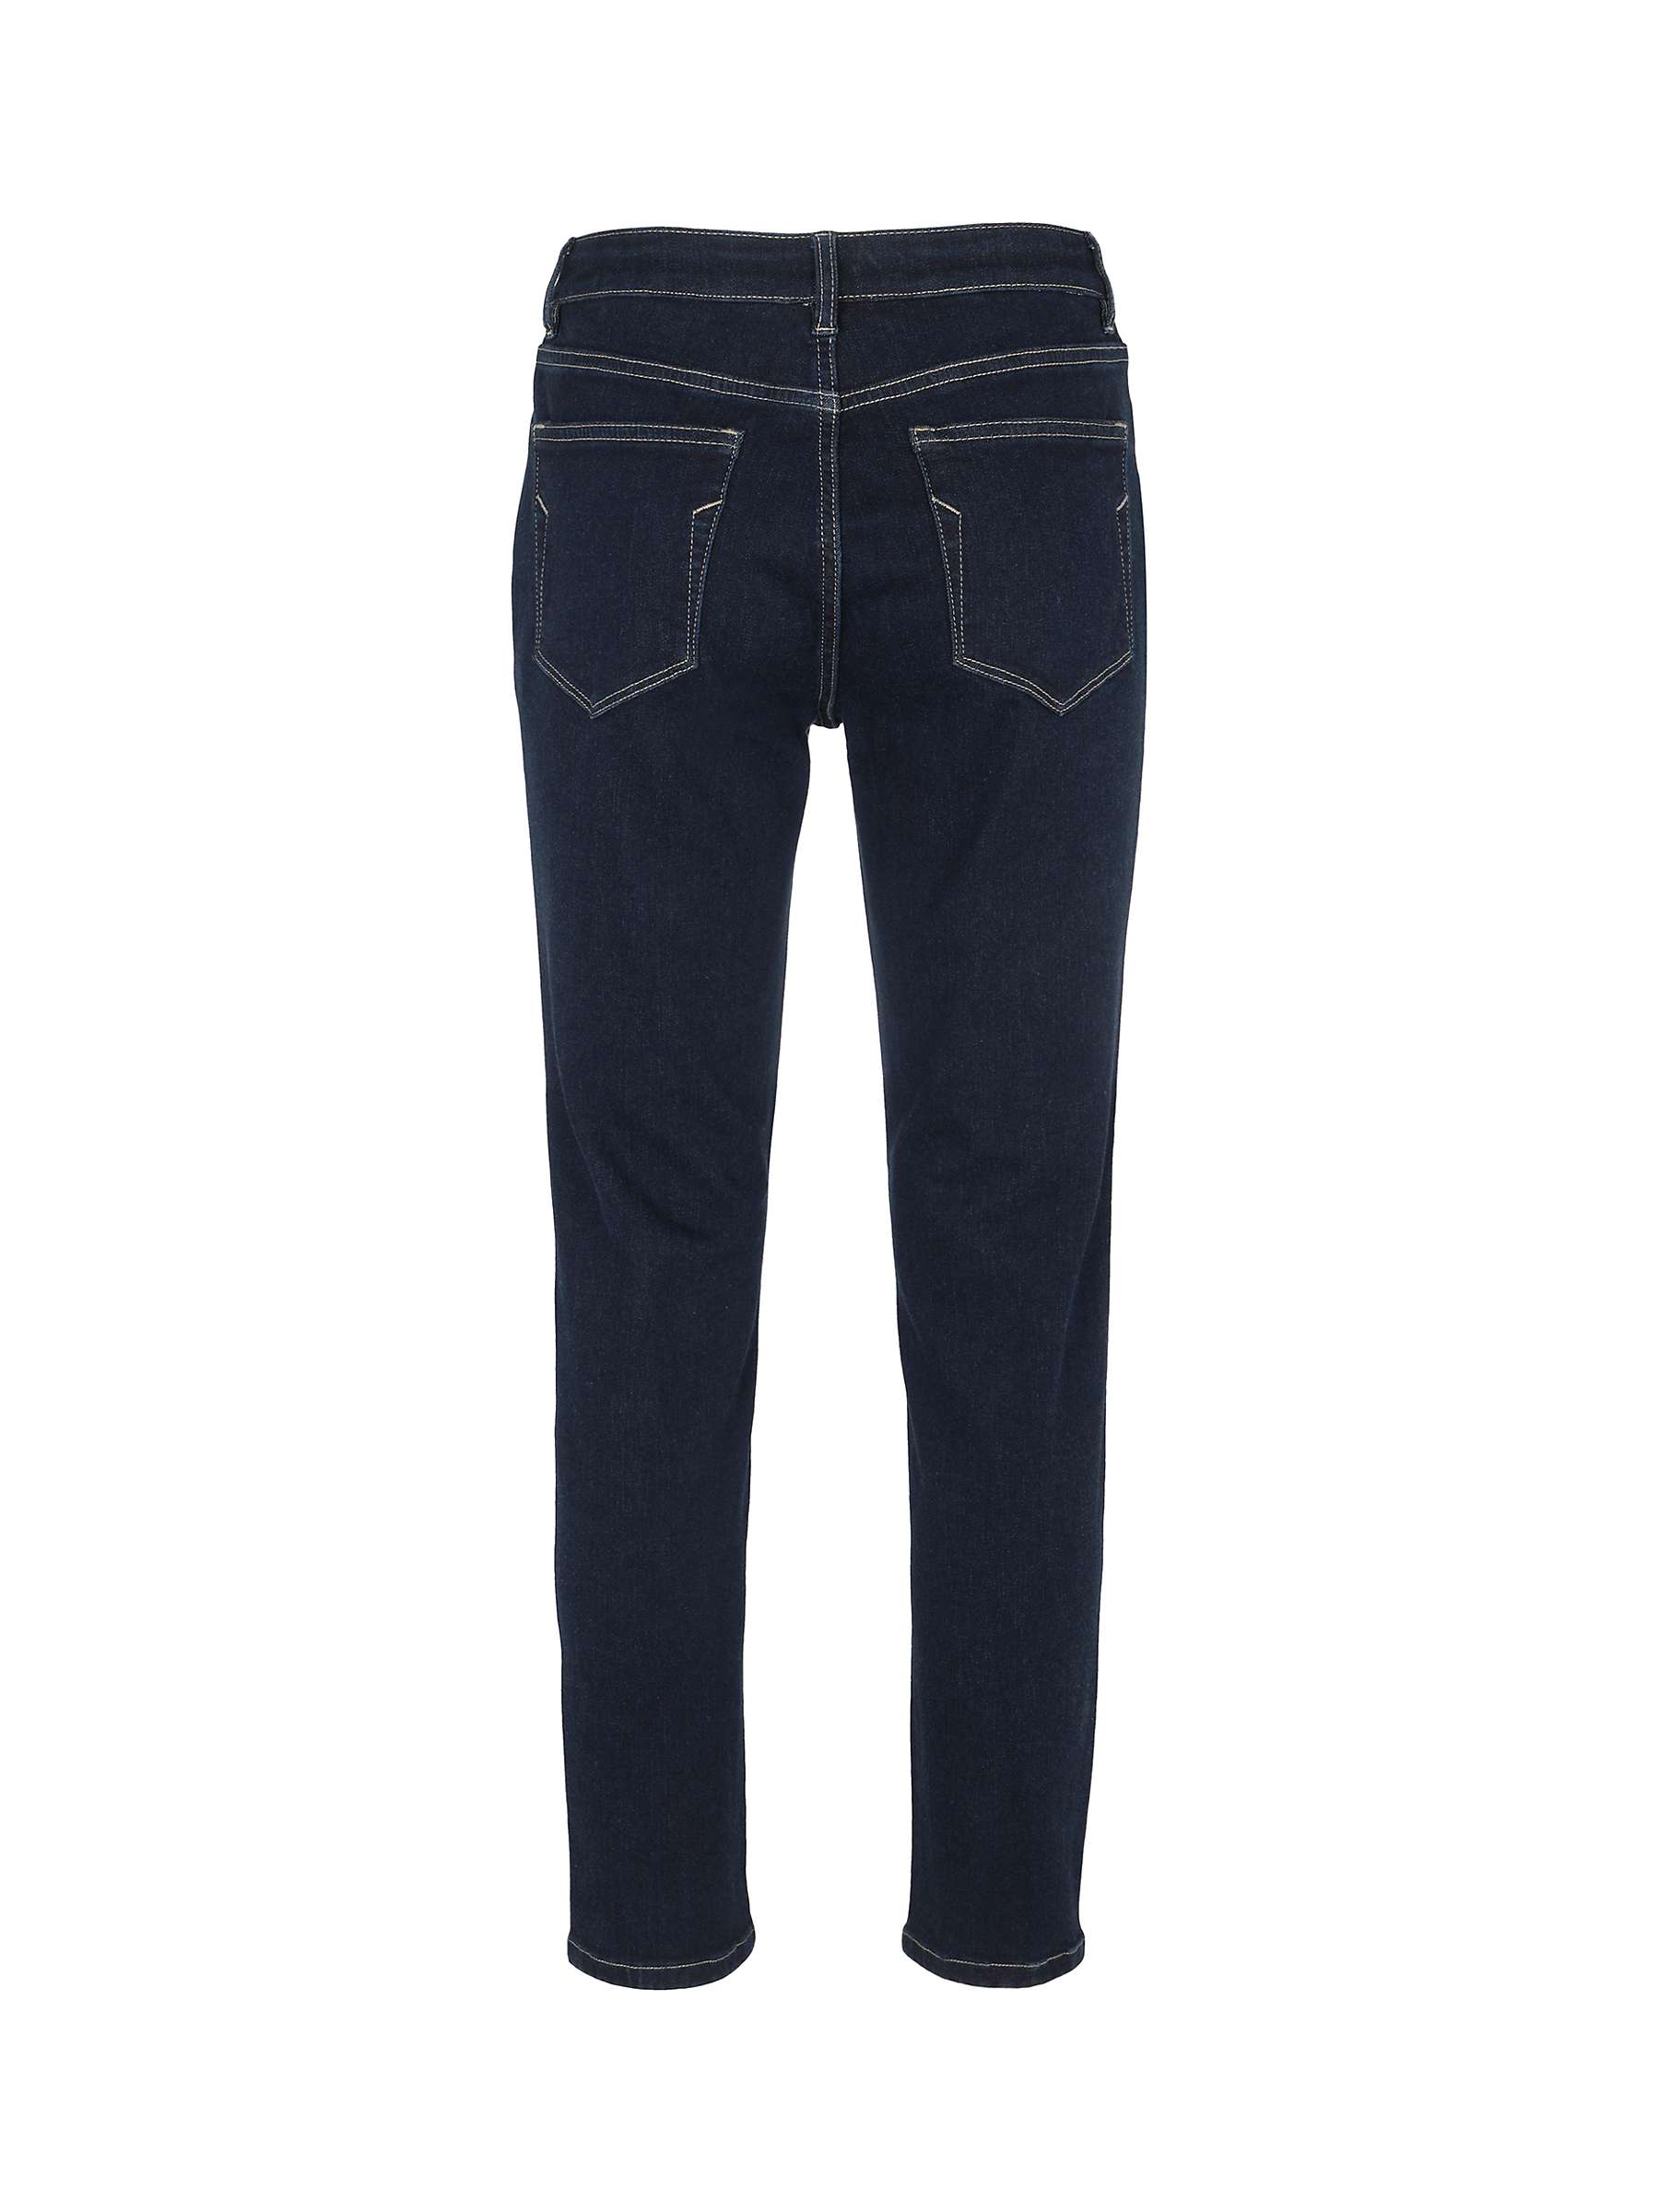 Mint Velvet Maryland Skinny Jeans, Dark Blue at John Lewis & Partners